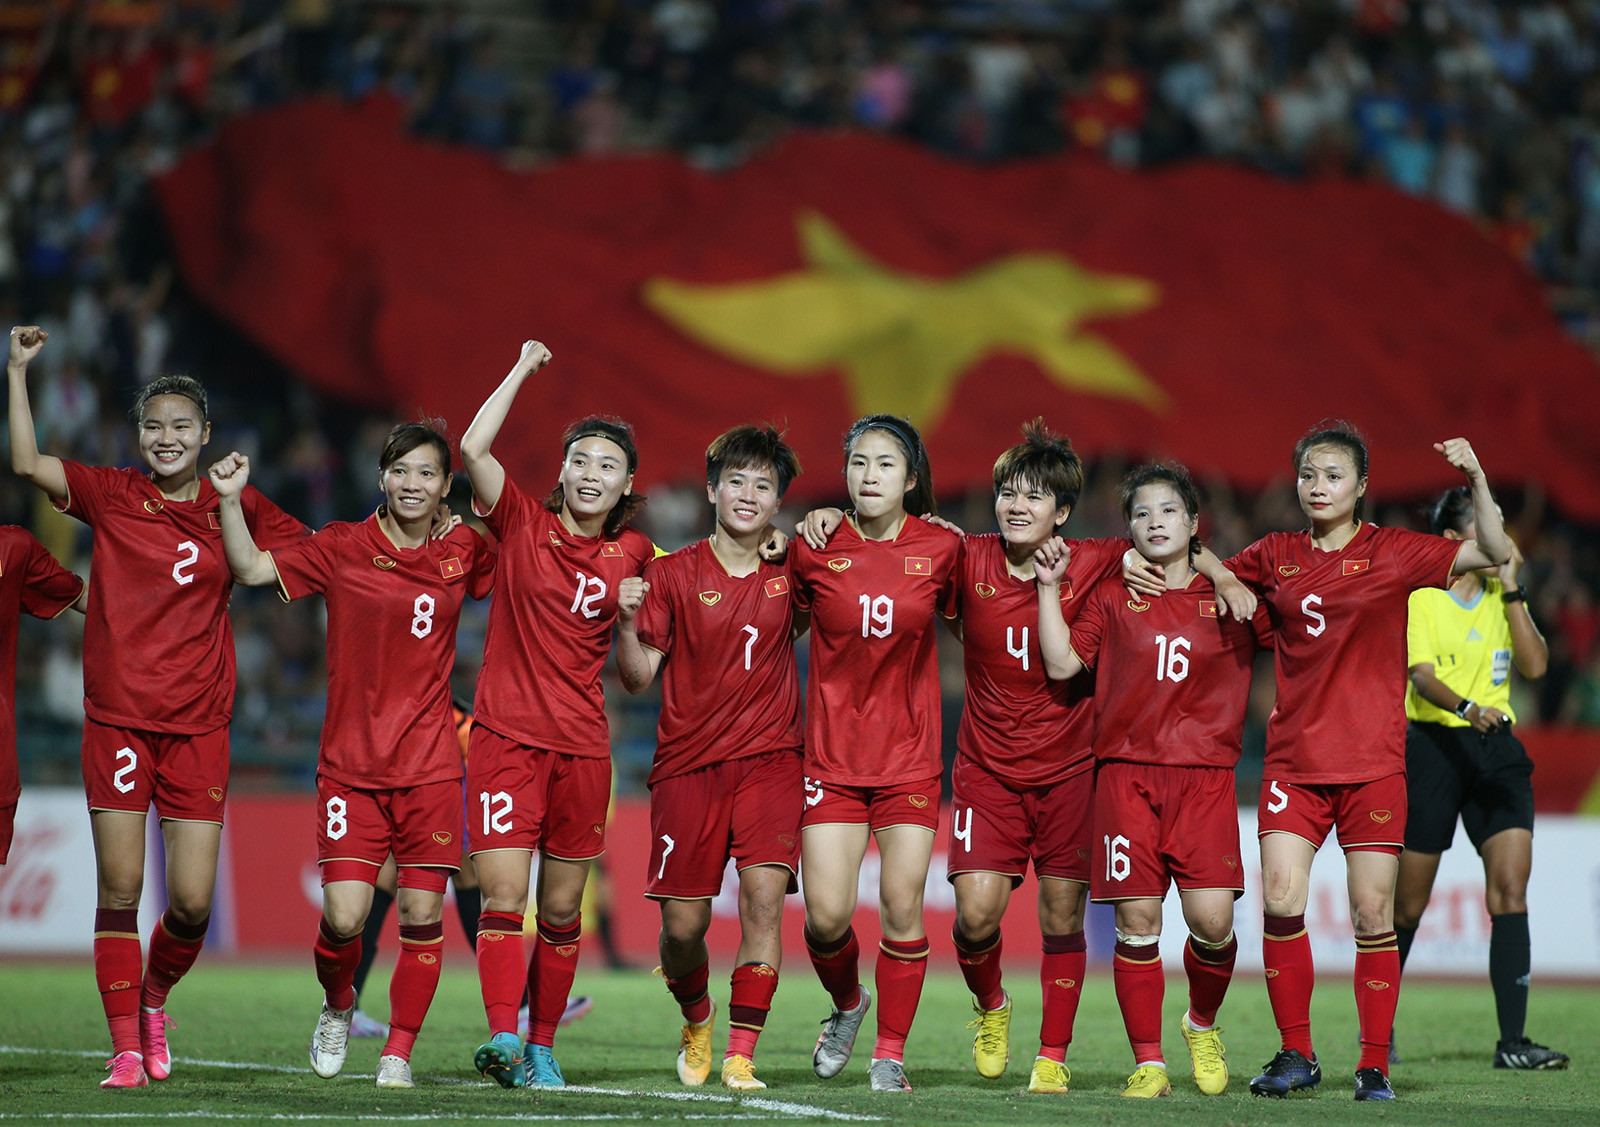 đội tuyển bóng đá nữ Việt Nam tham dự vòng chung kết FIFA World Cup nữ 2023